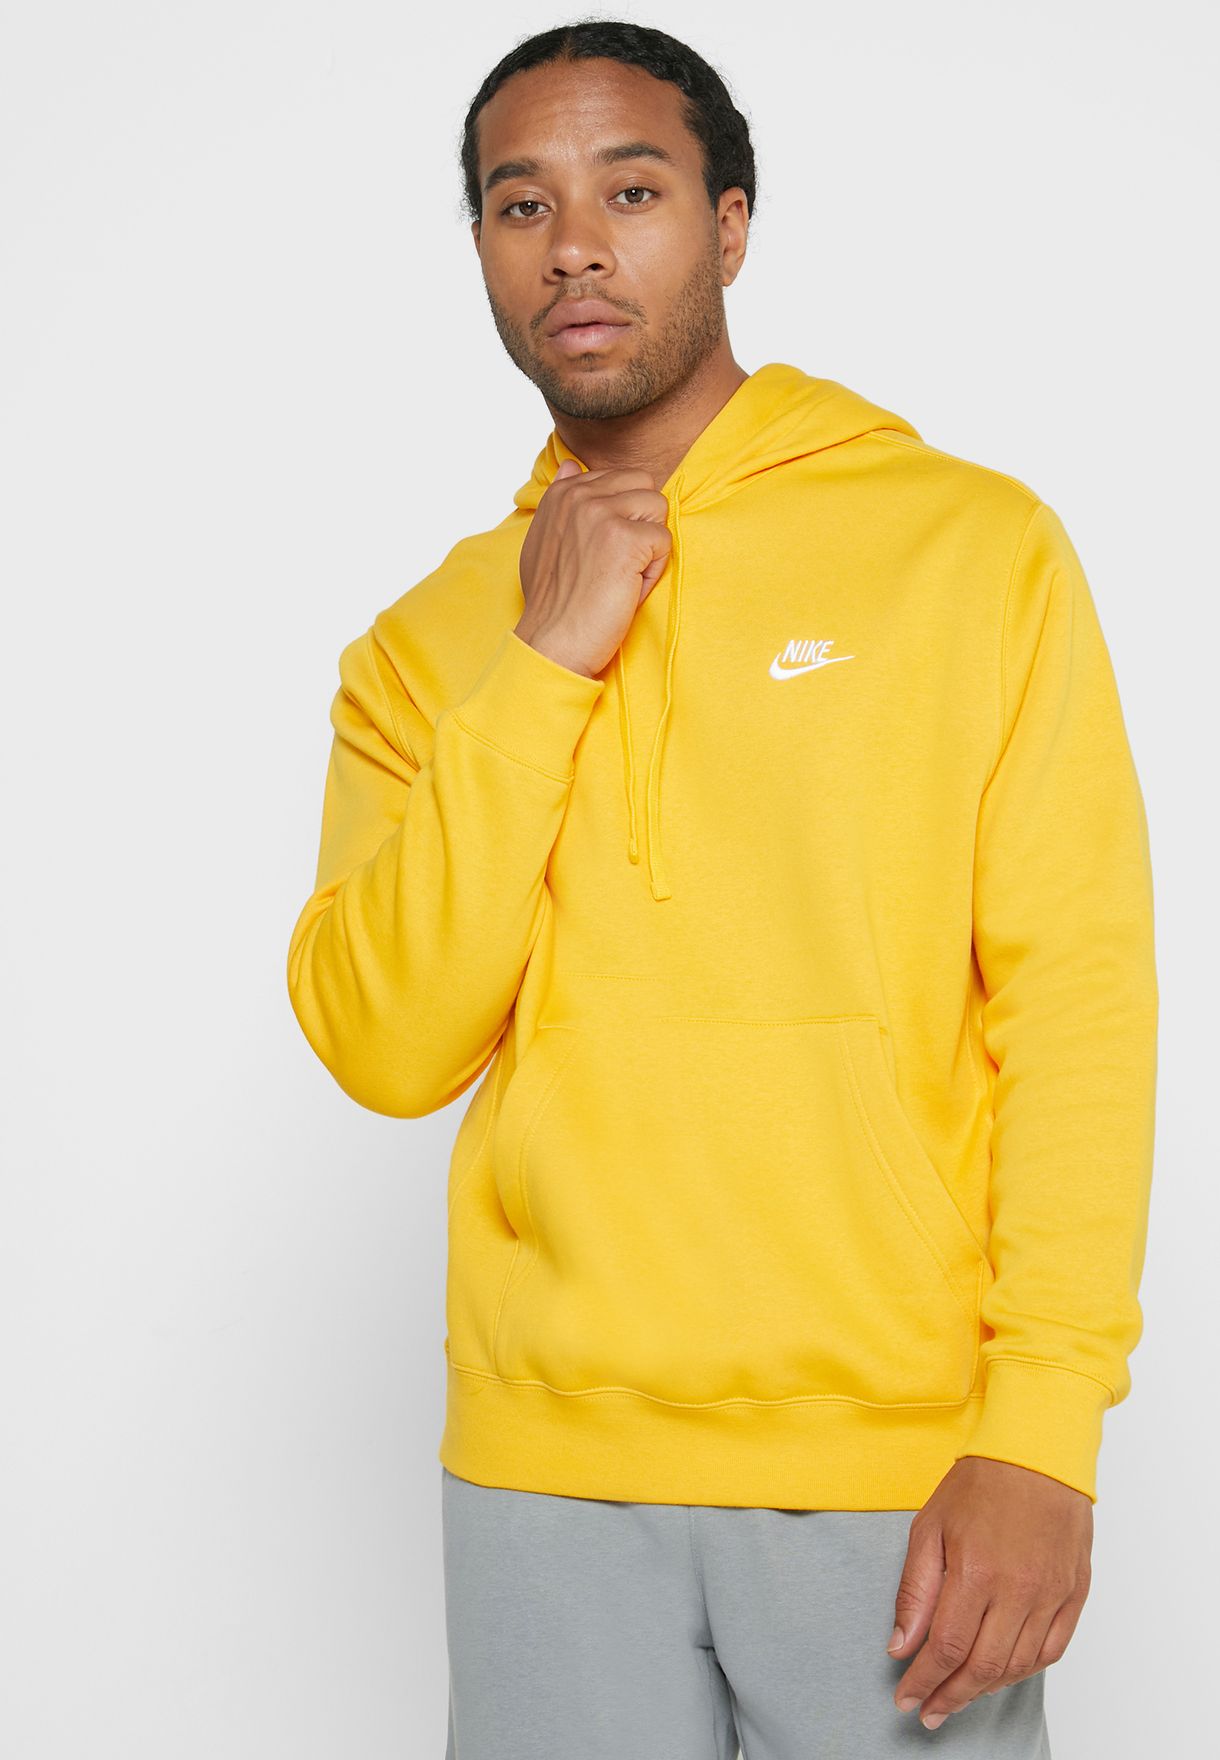 nike yellow mens hoodie